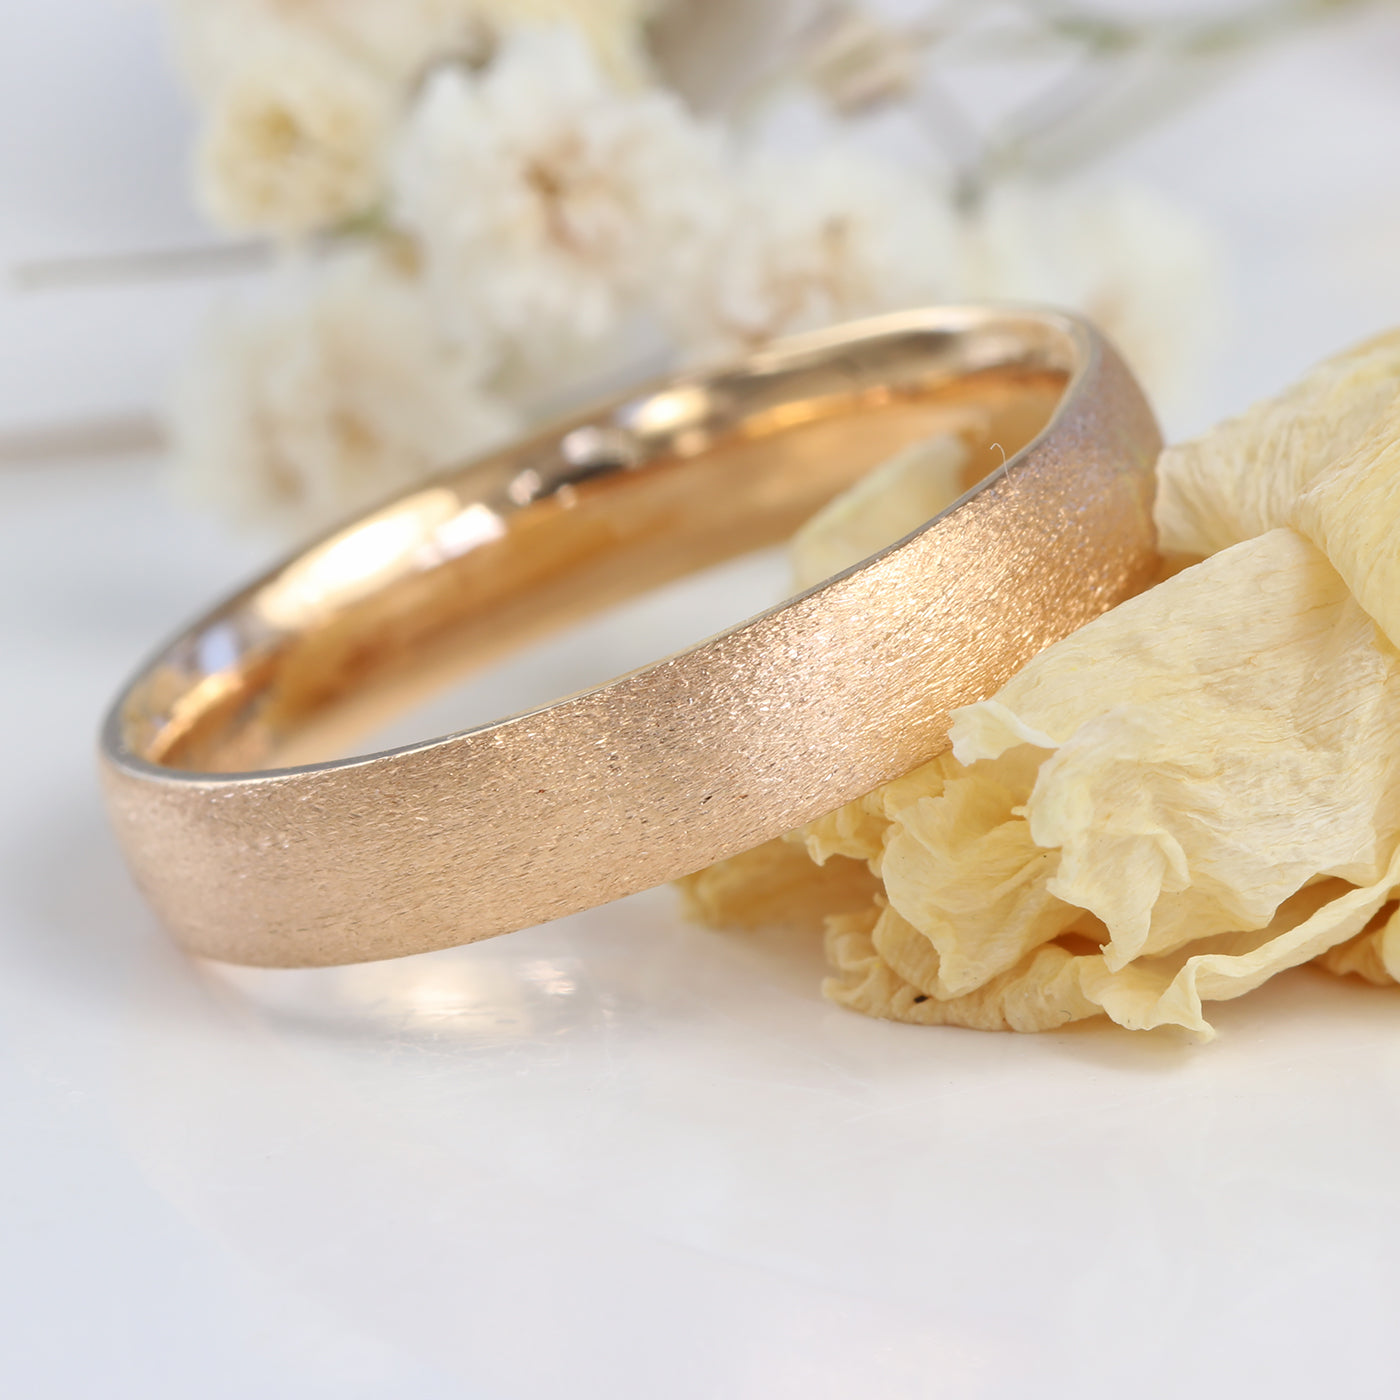 4mm Rose Gold Spun Silk Court Wedding Ring (Size O 1/2, Resize G-P)